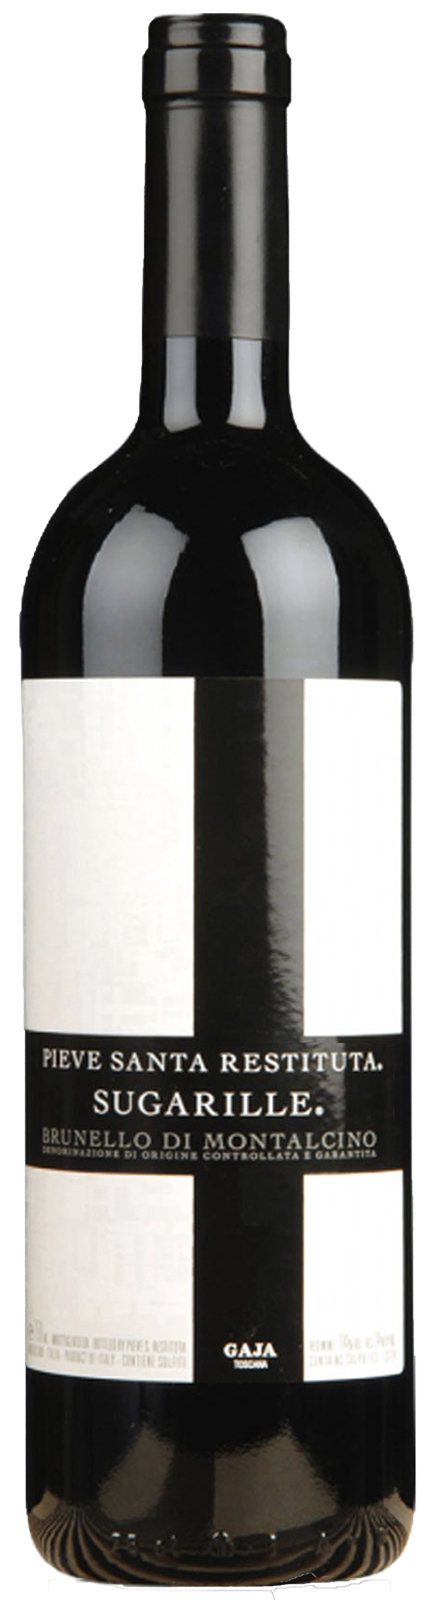 Bottle shot of 2013 Brunello di Montalcino Sugarille